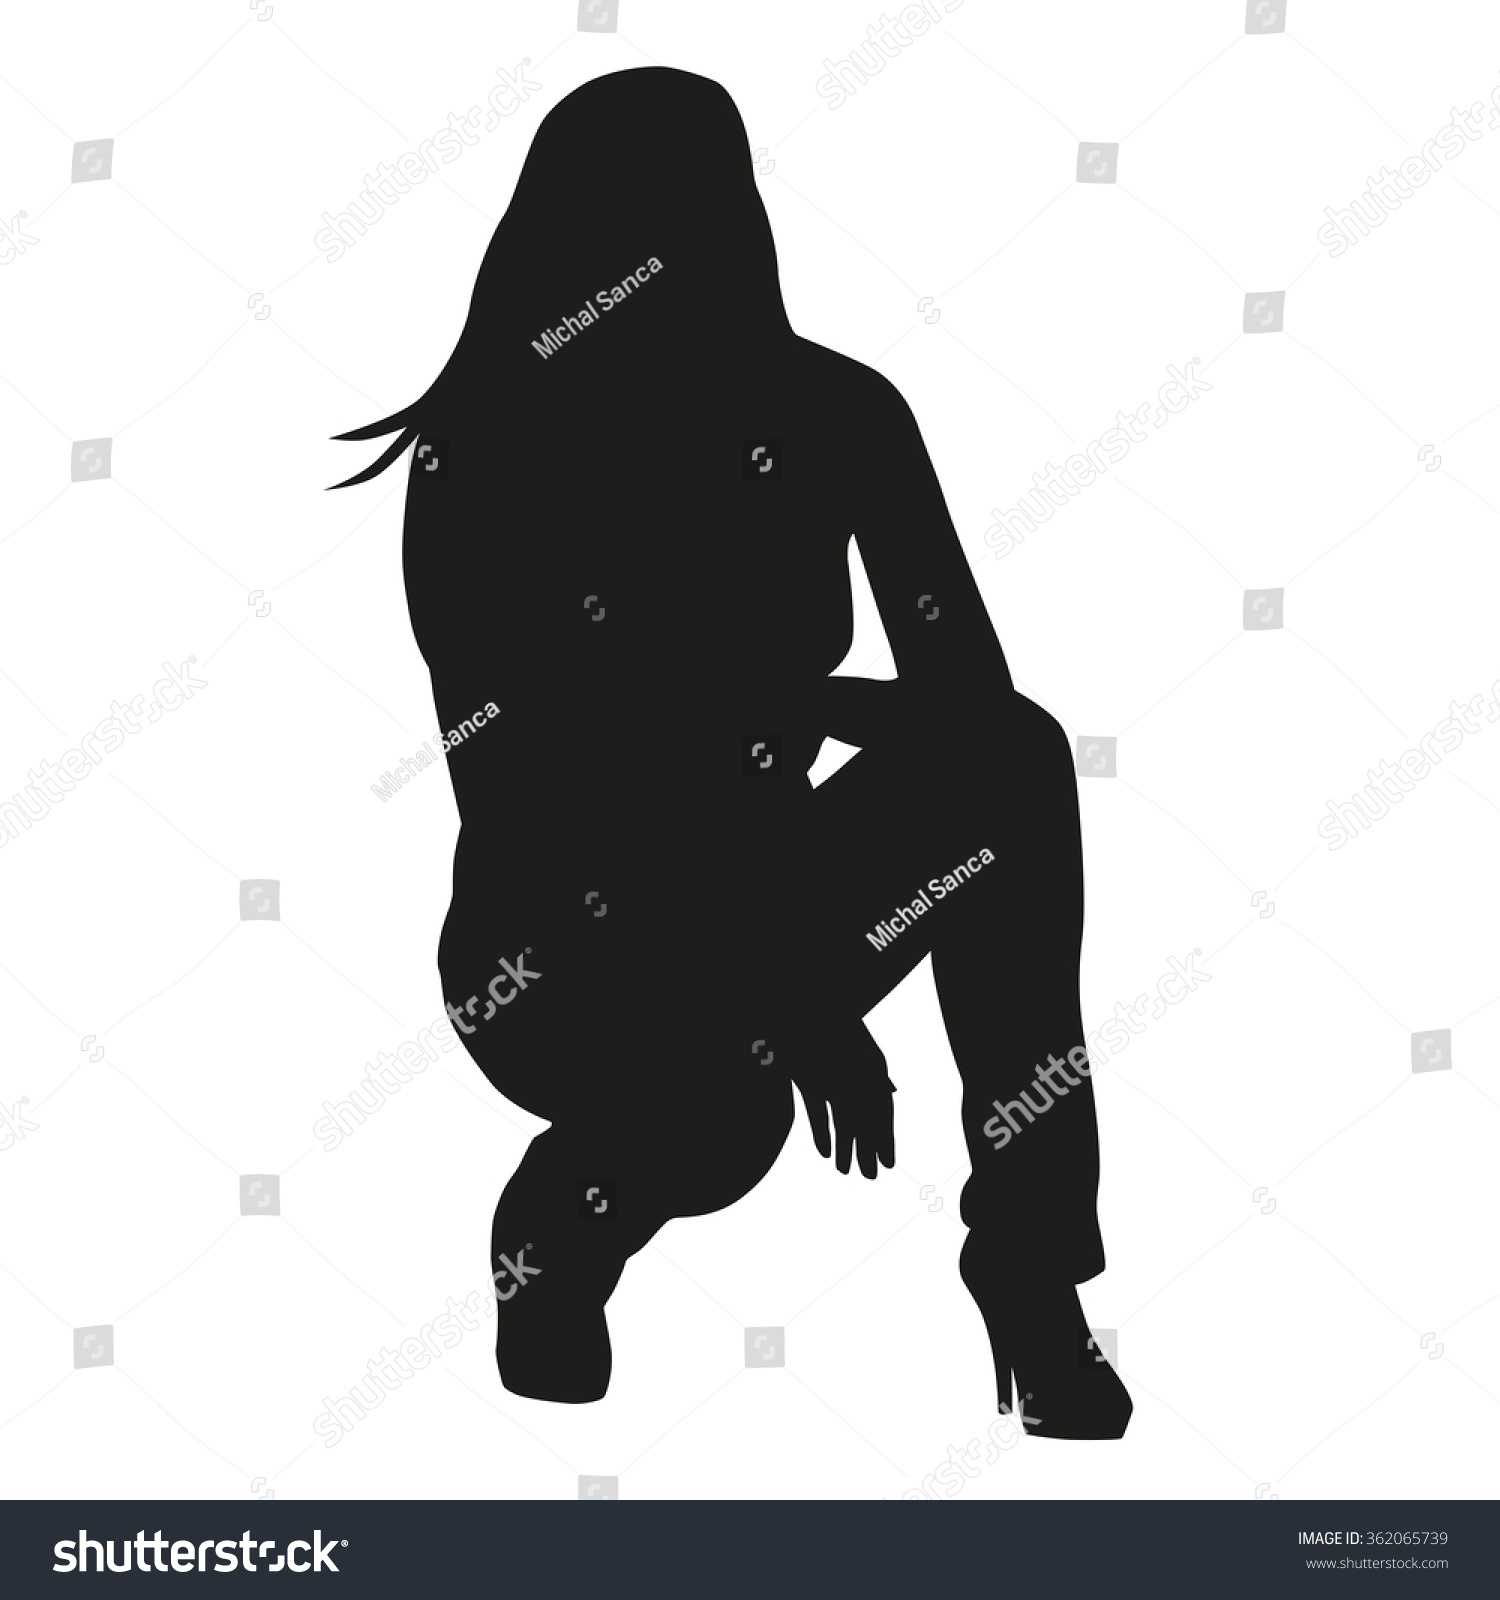 Kneeling Woman Vector Silhouette Vectores En Stock 362065739 - Shutterstock